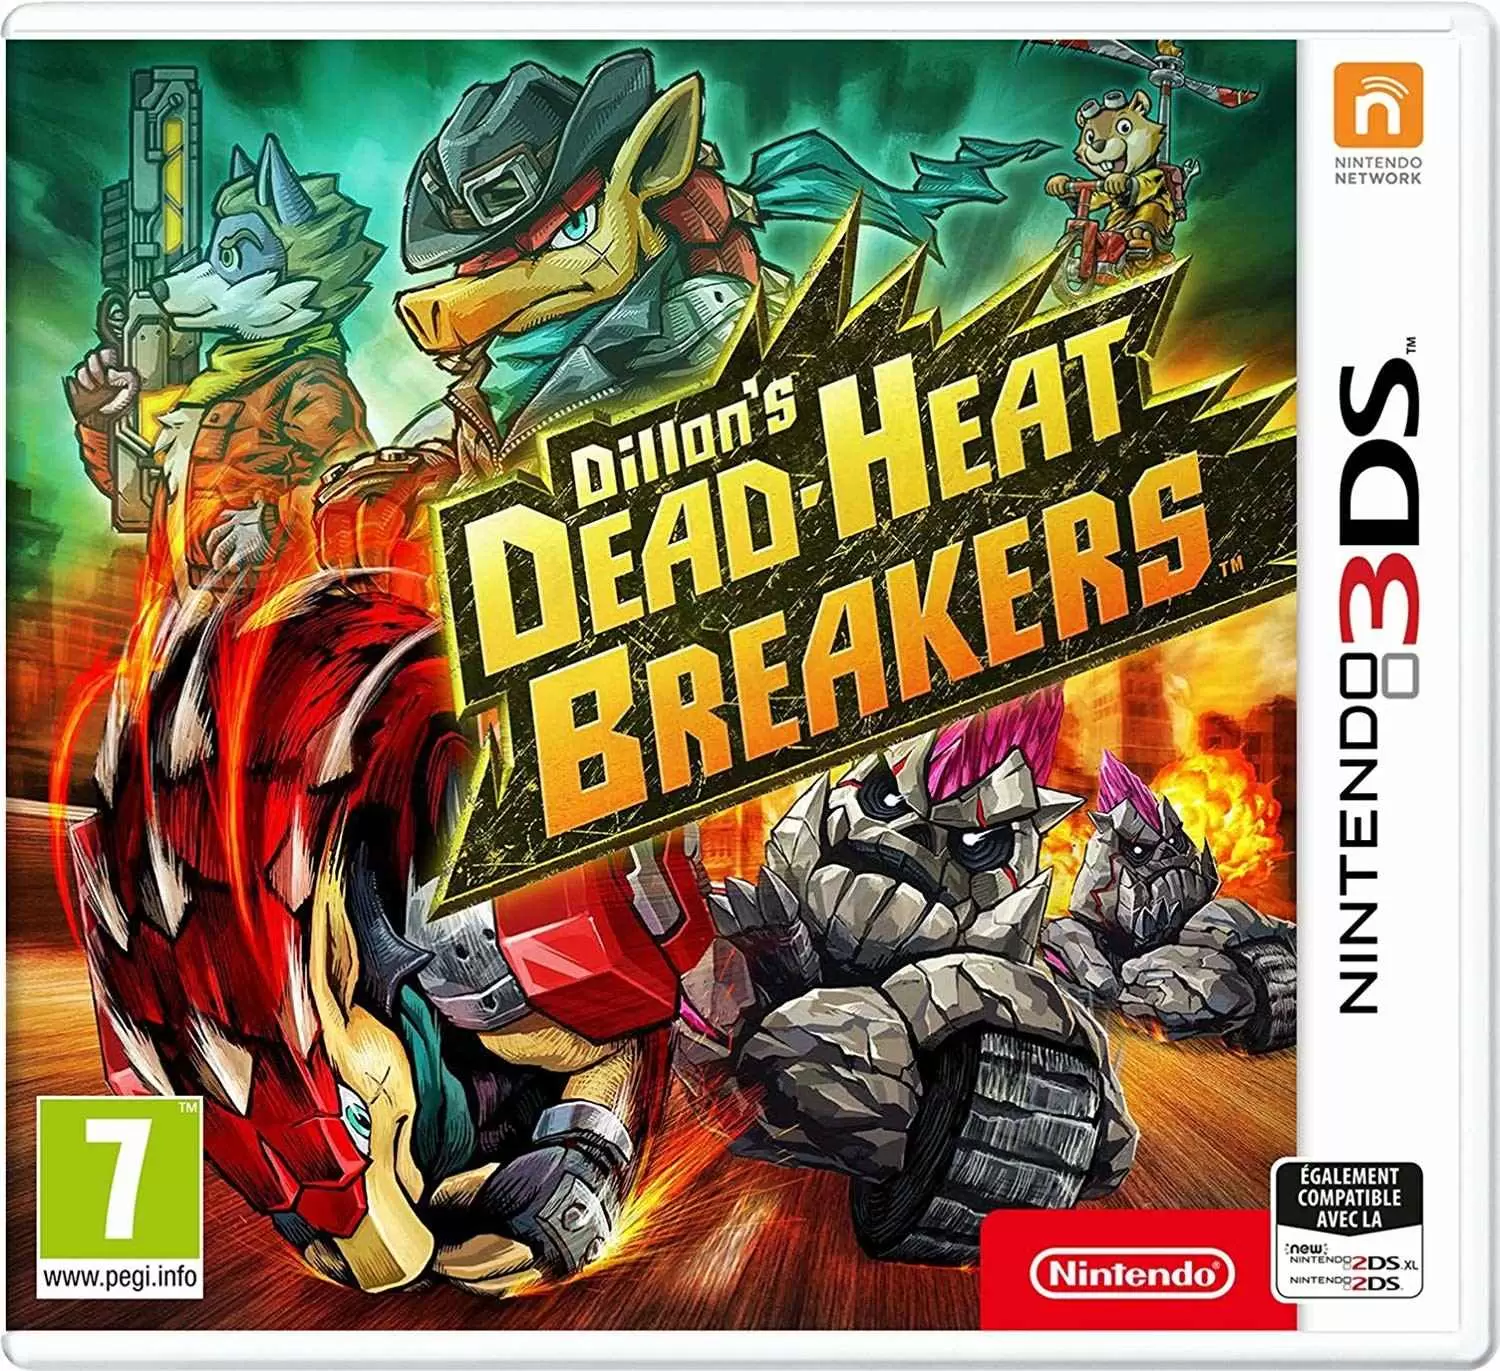 Jeux Nintendo 2DS / 3DS - Dillons Dead-Heat Breakers